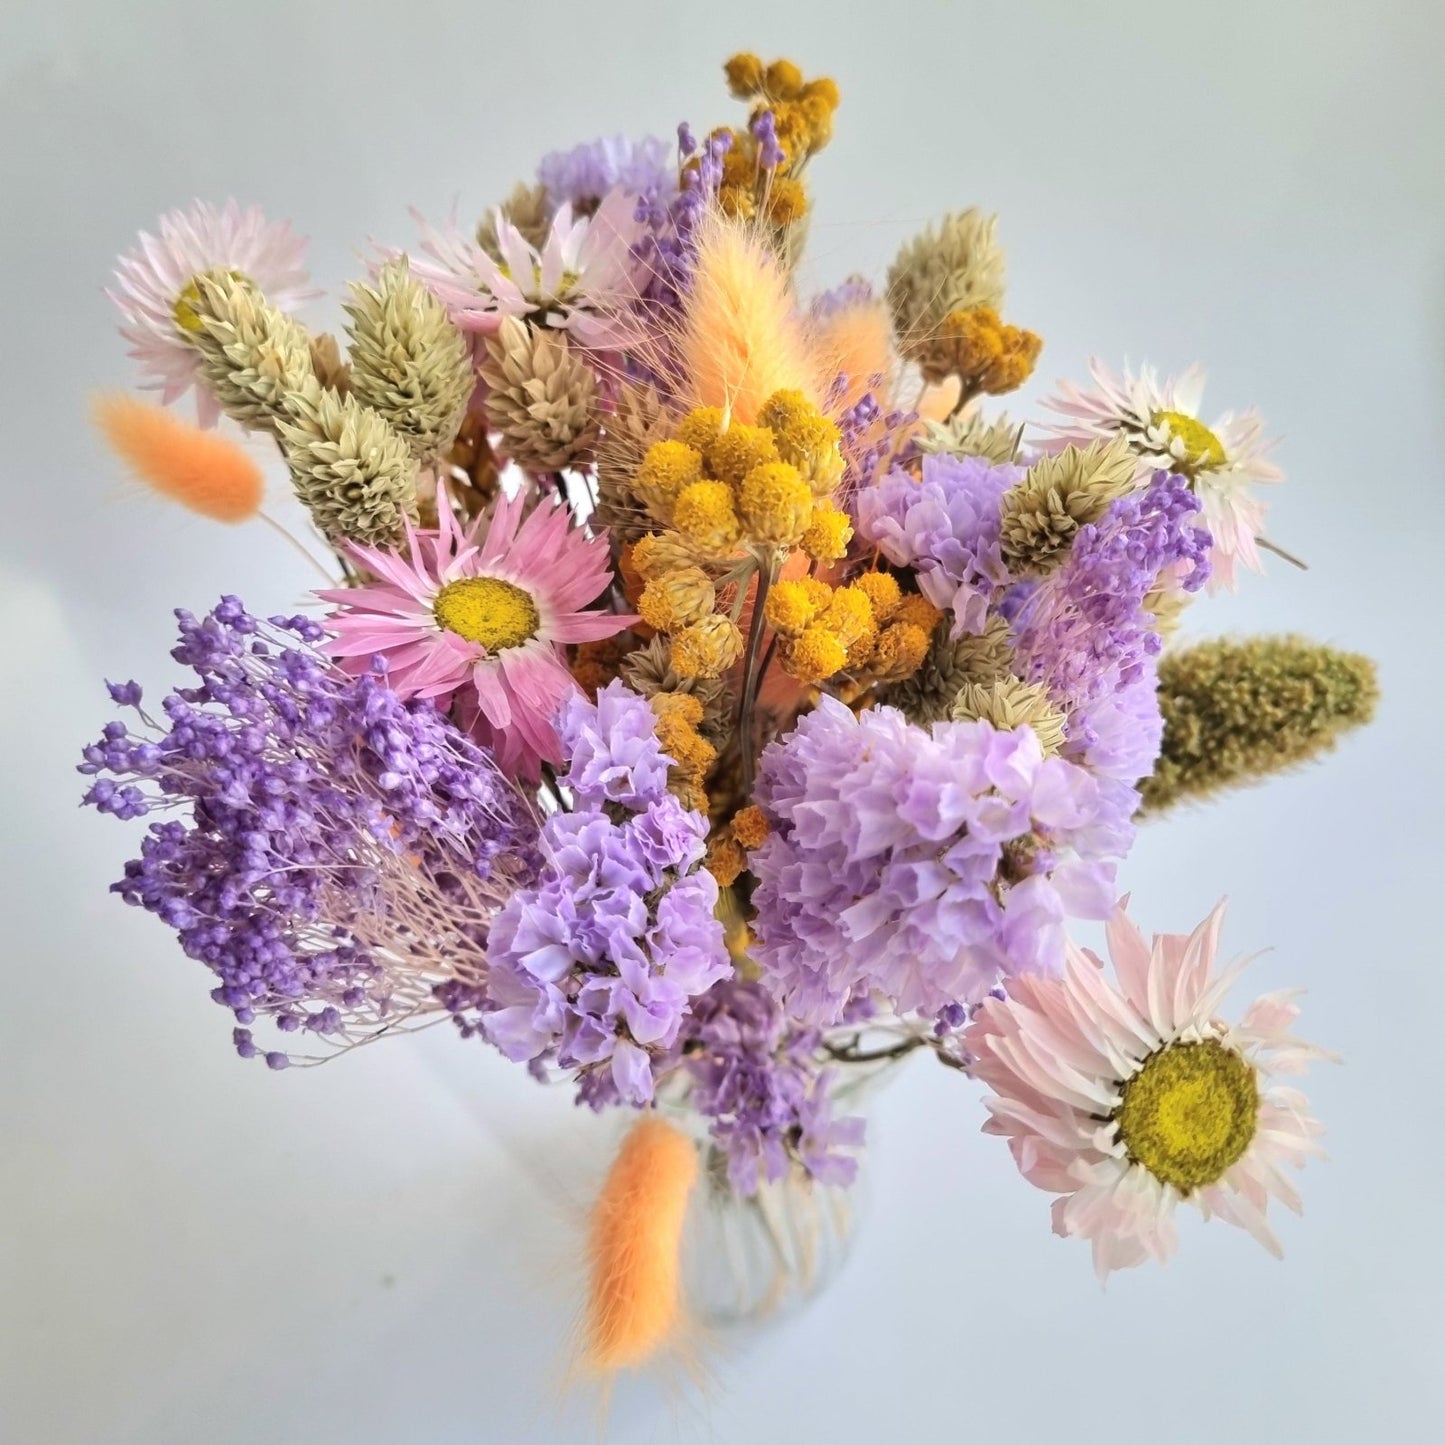 Dried flowers - Joy (small)